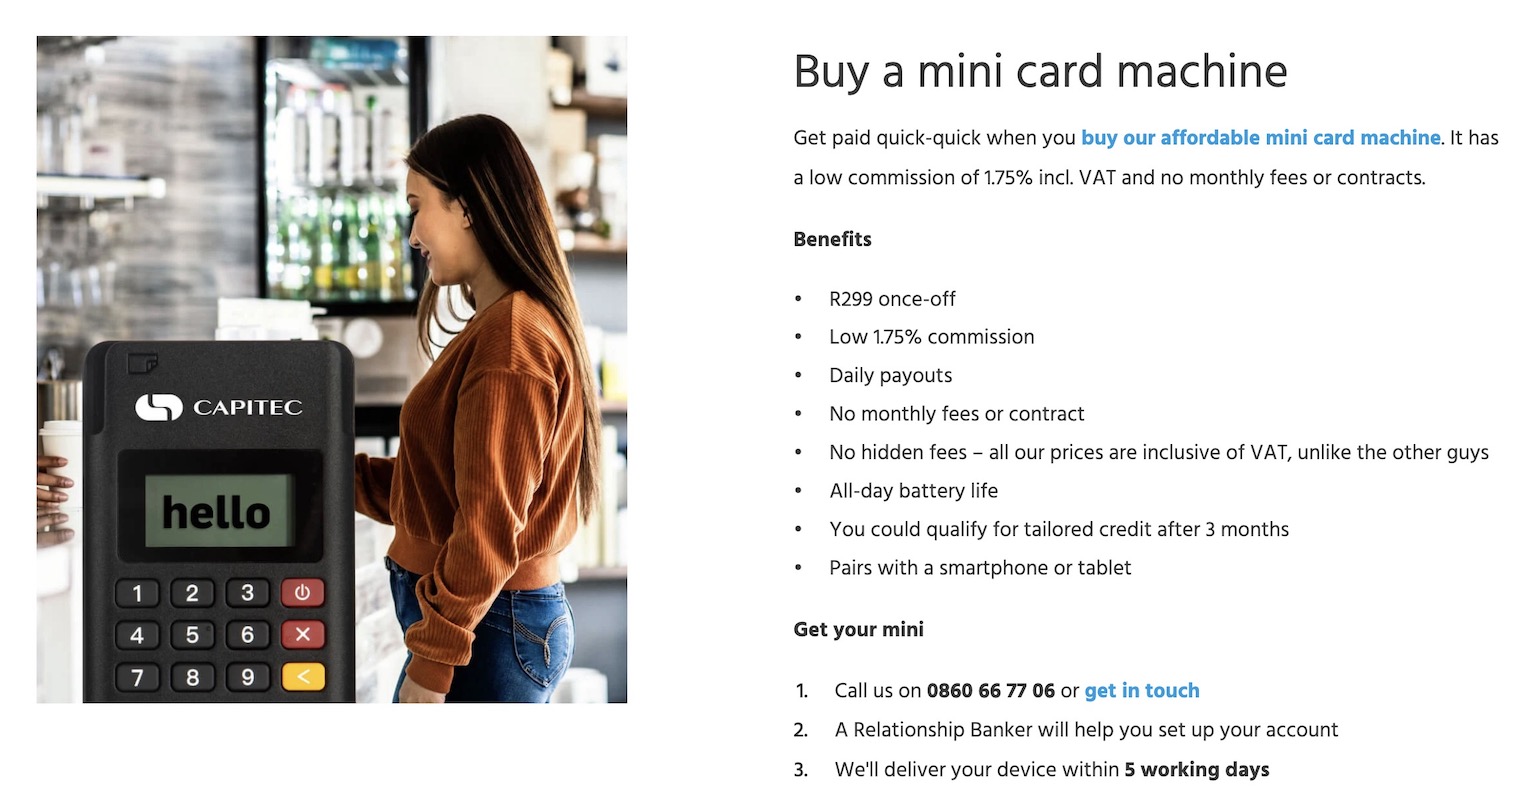 capitec mini card machine price and features